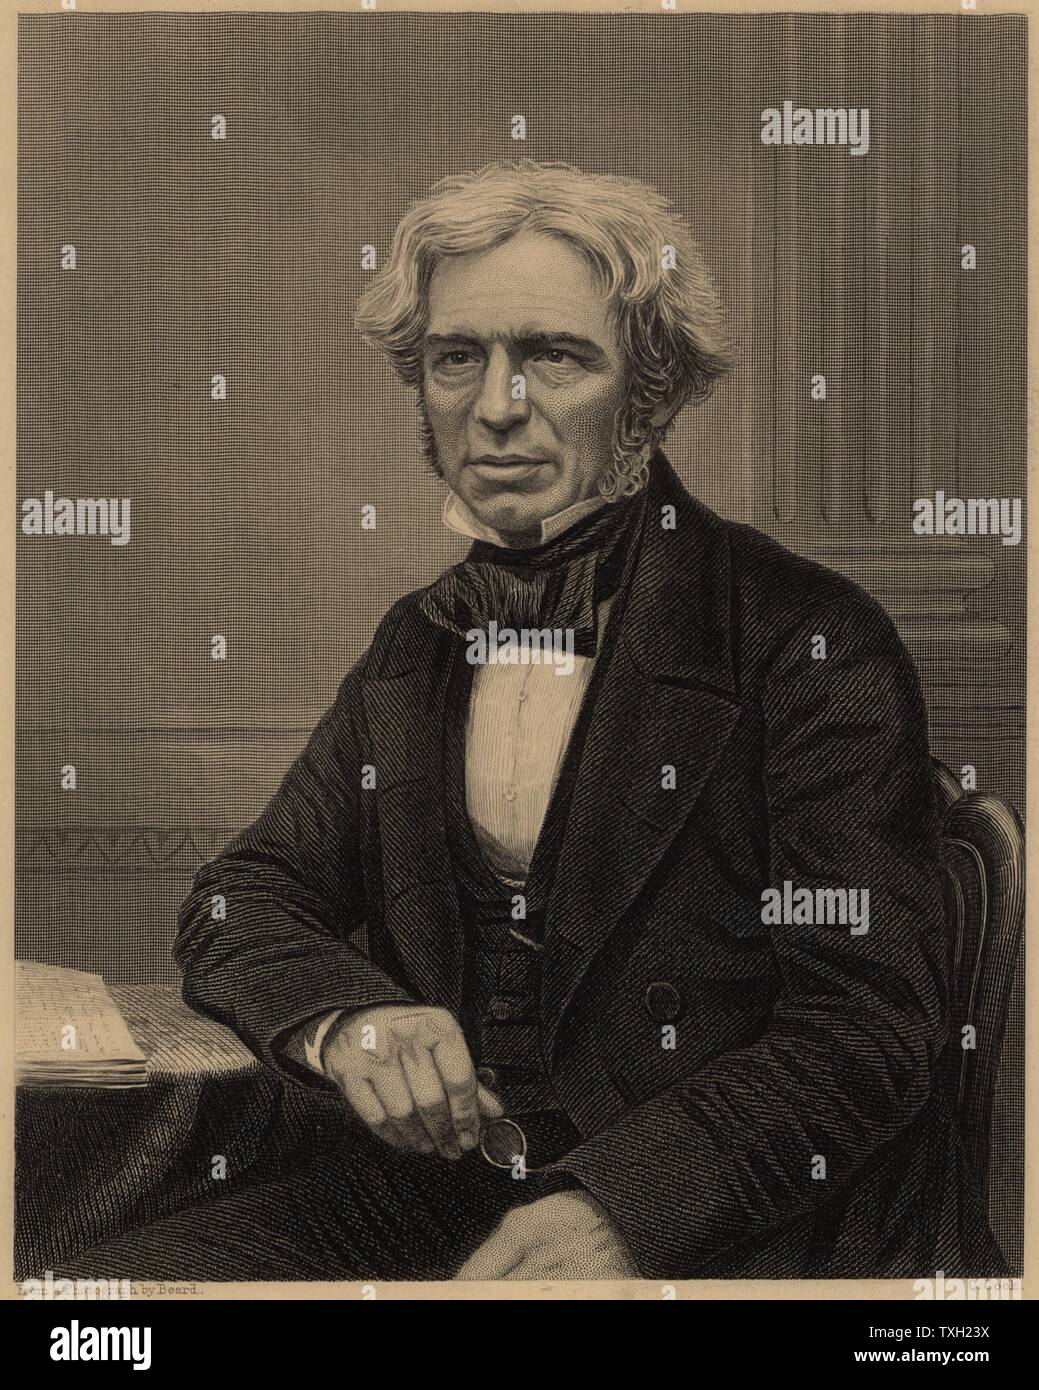 Michael Faraday (1791-1867) englischer Chemiker und Physiker. Im Jahre 1813 wurde Laboratory Assistant Humphry Davy an der Royal Institution in London. Im Jahre 1833 folgte er Davy als Professor der Chemie an der RI. Von James Sheridan Muspratt 'Chemie' (London, c 1860). Gravur. Stockfoto